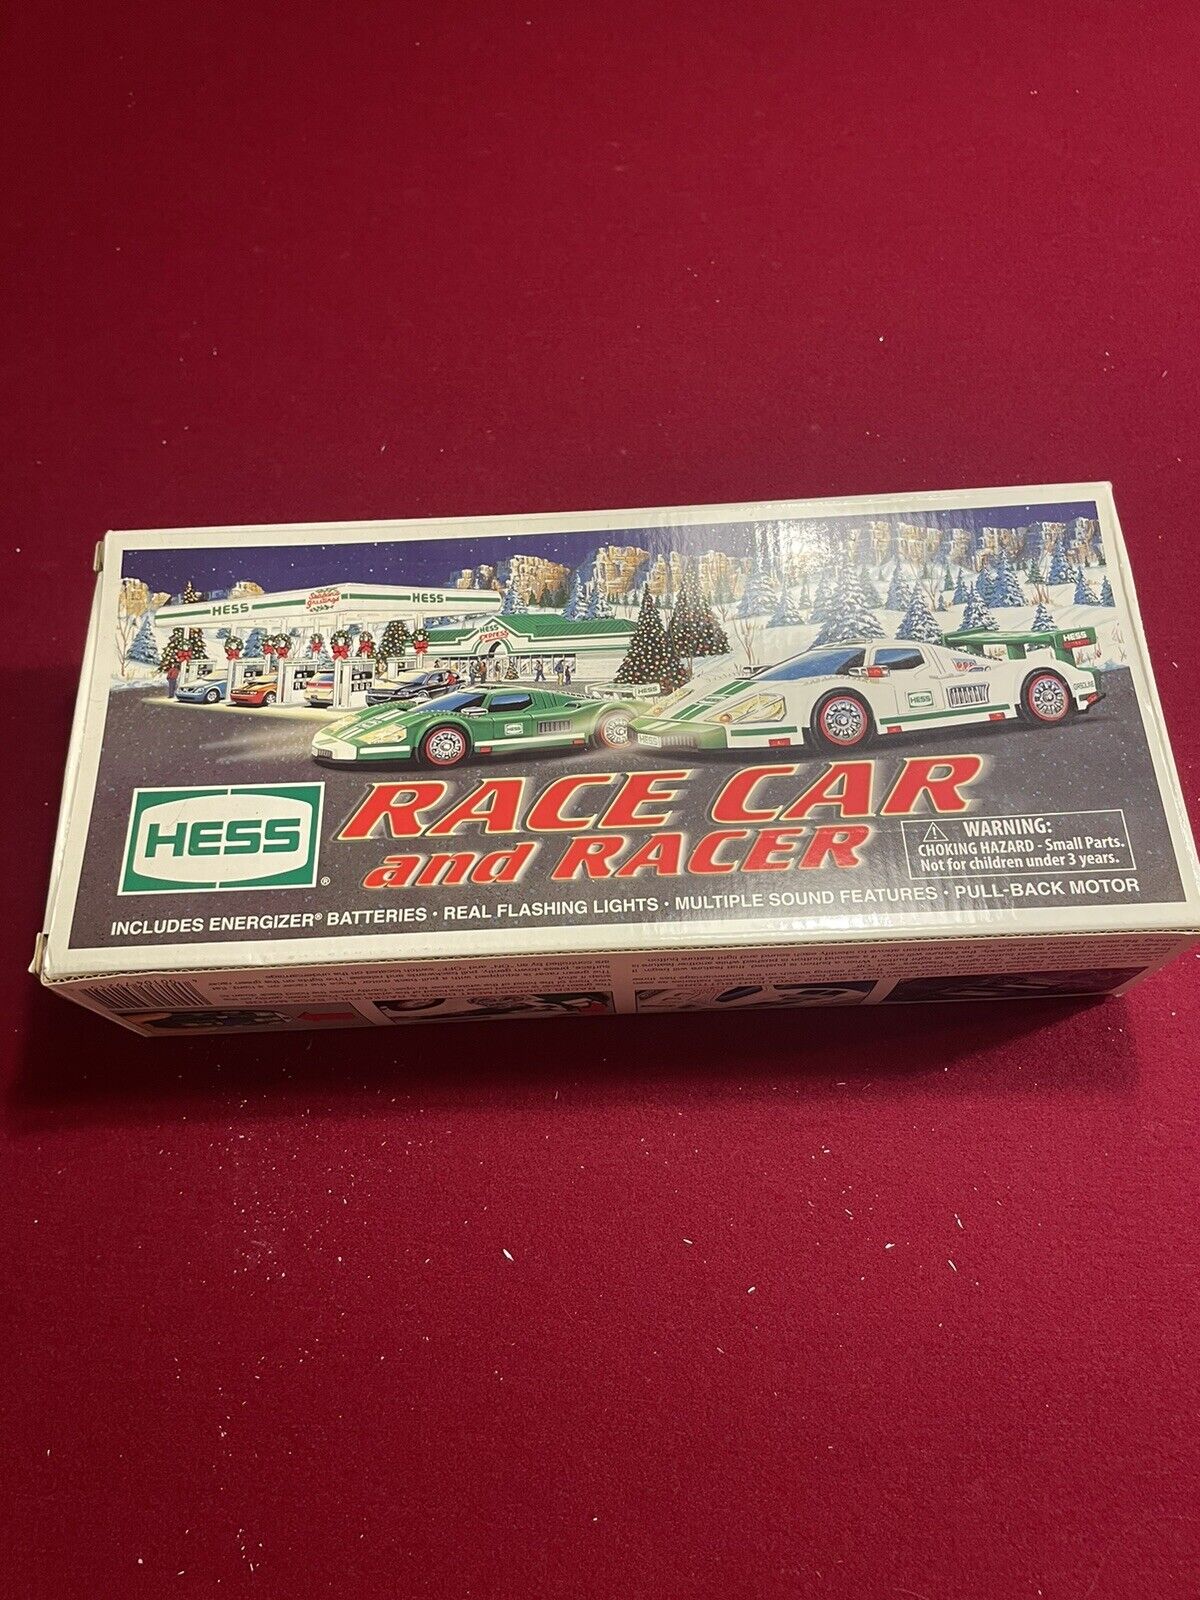 Hess Race Car And Racer 2009, Original Box